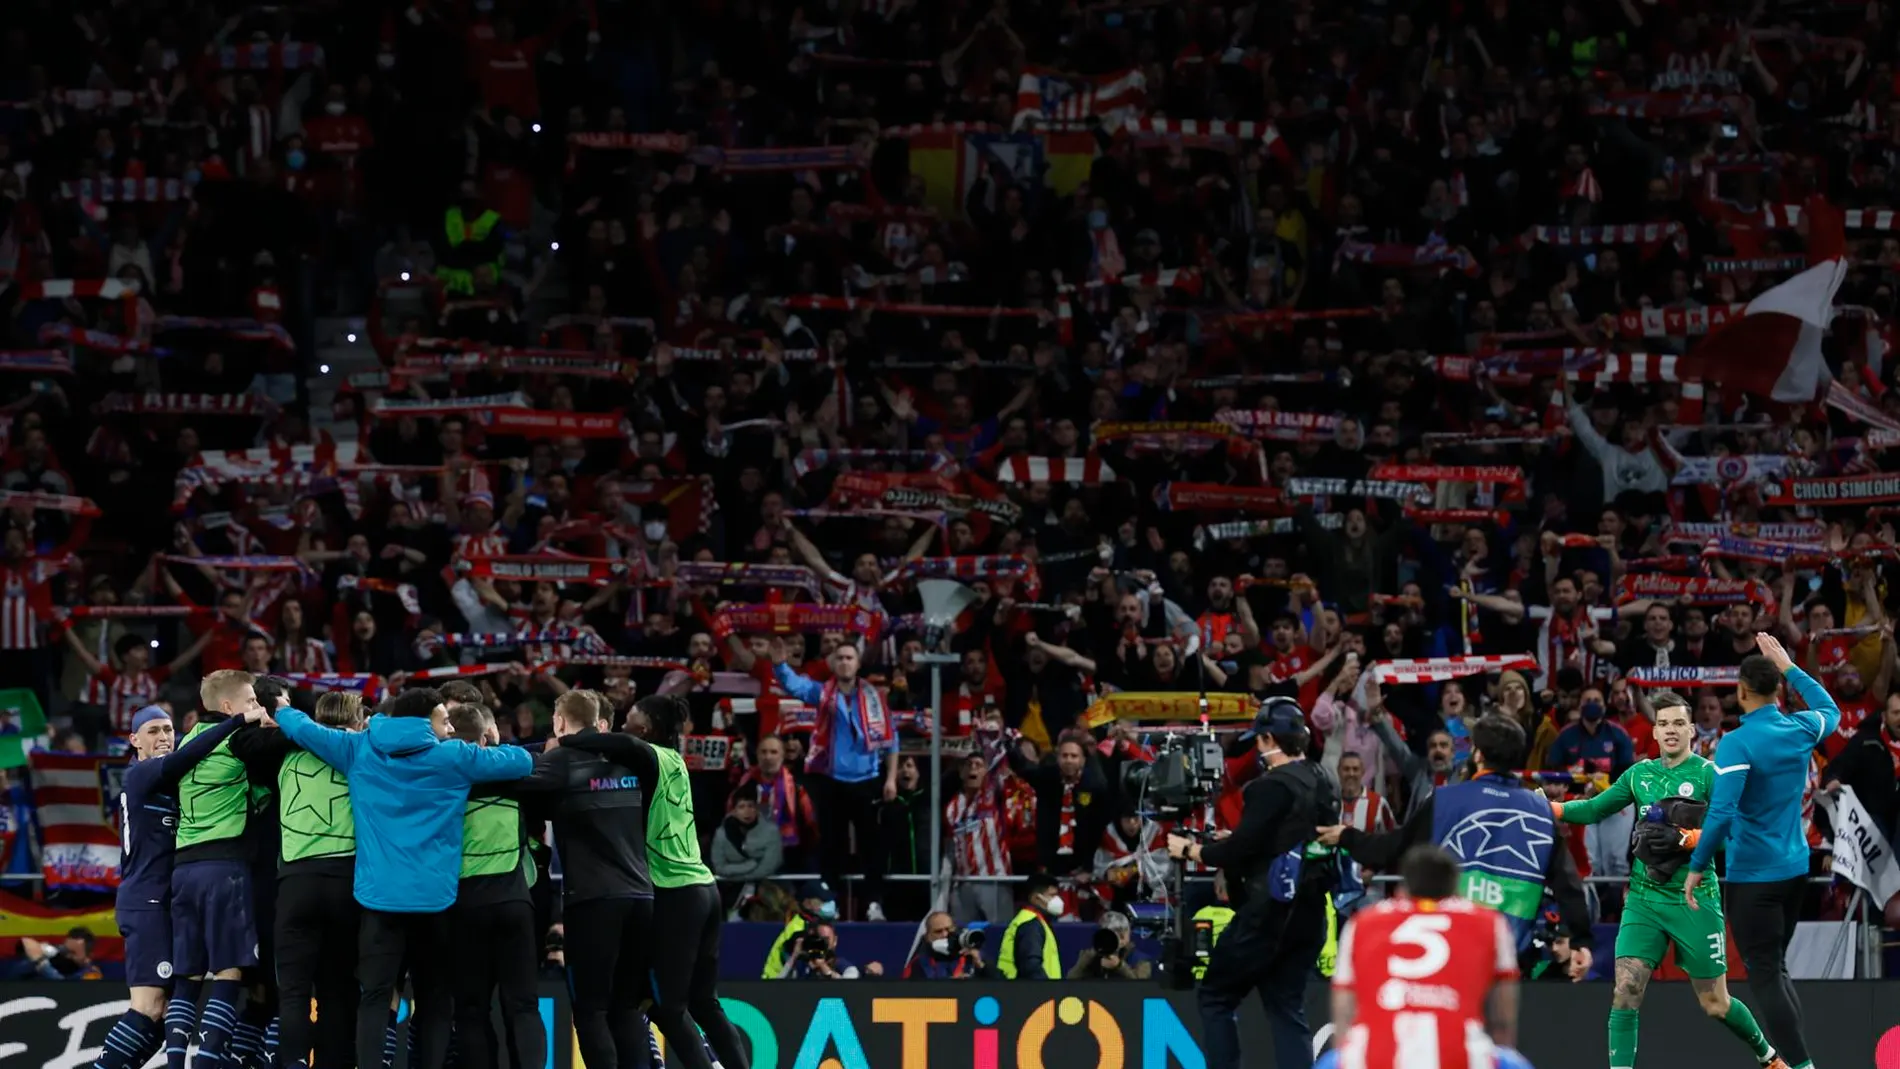 La afición del Atlético de Madrid animando tras la derrota